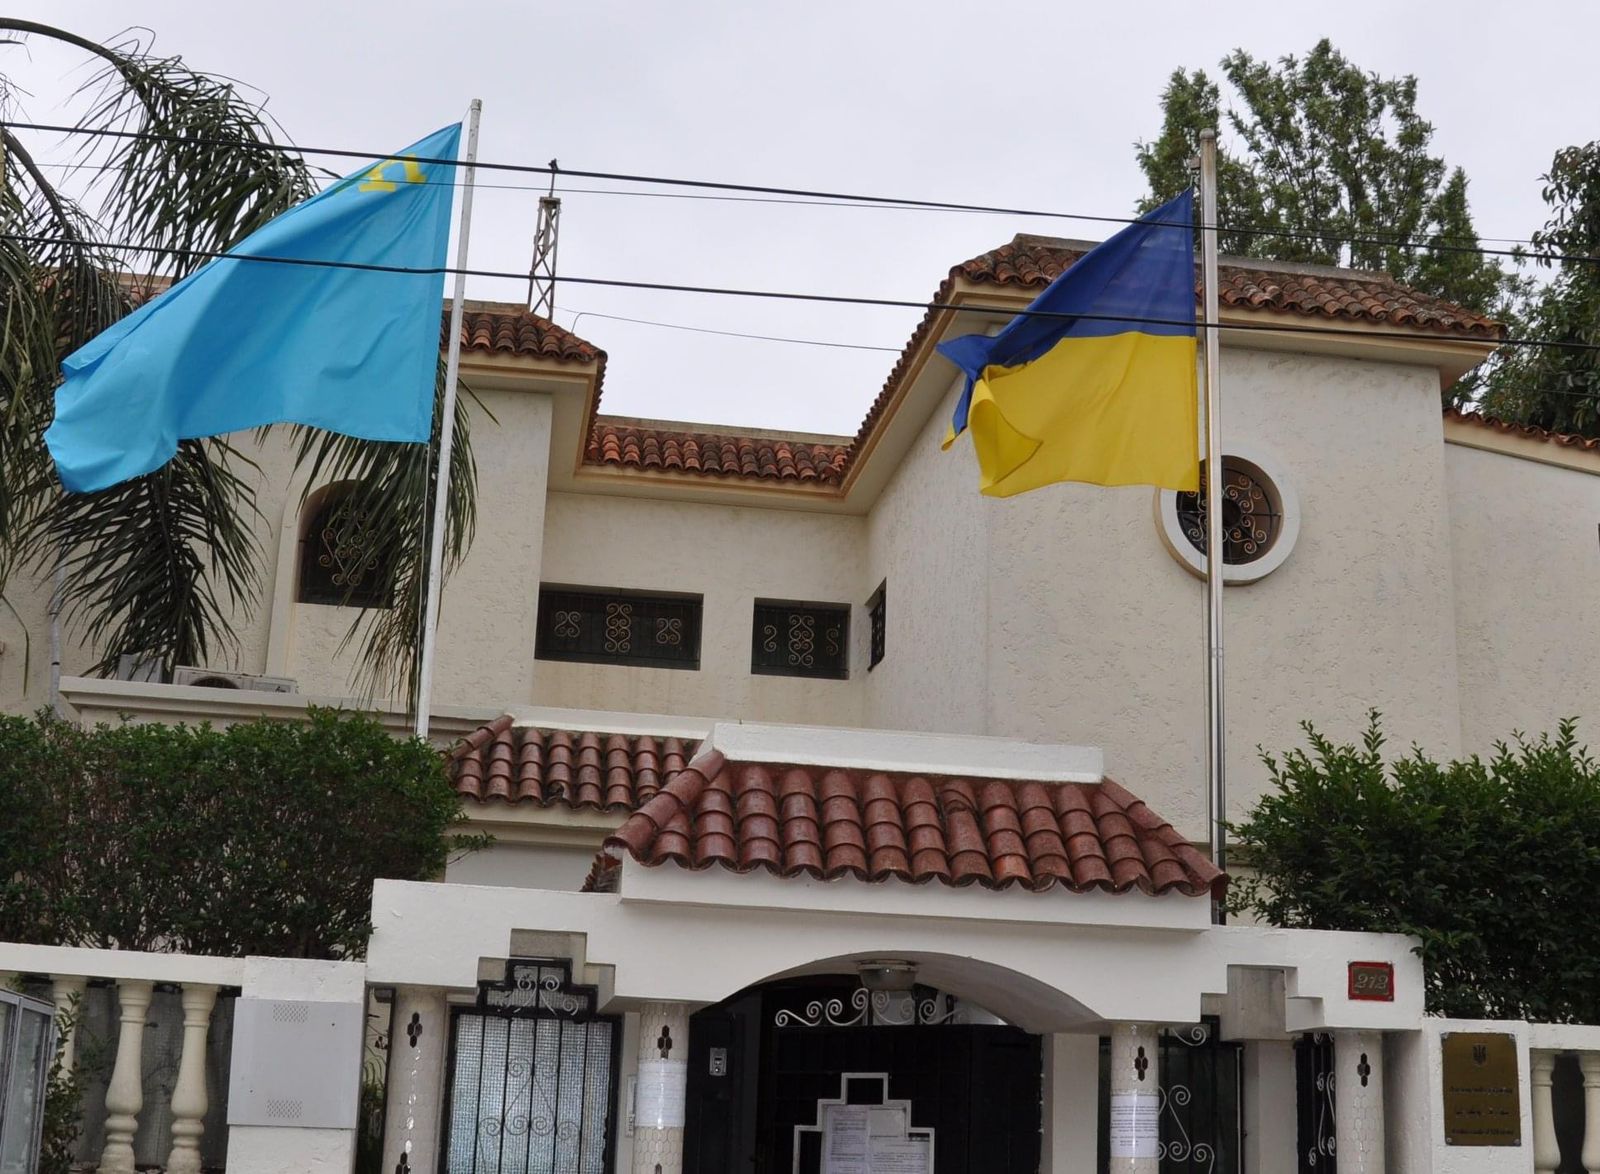 Etudiants Marocains d’Ukraine: Une réunion est prévue vendredi avec le nouvel ambassadeur